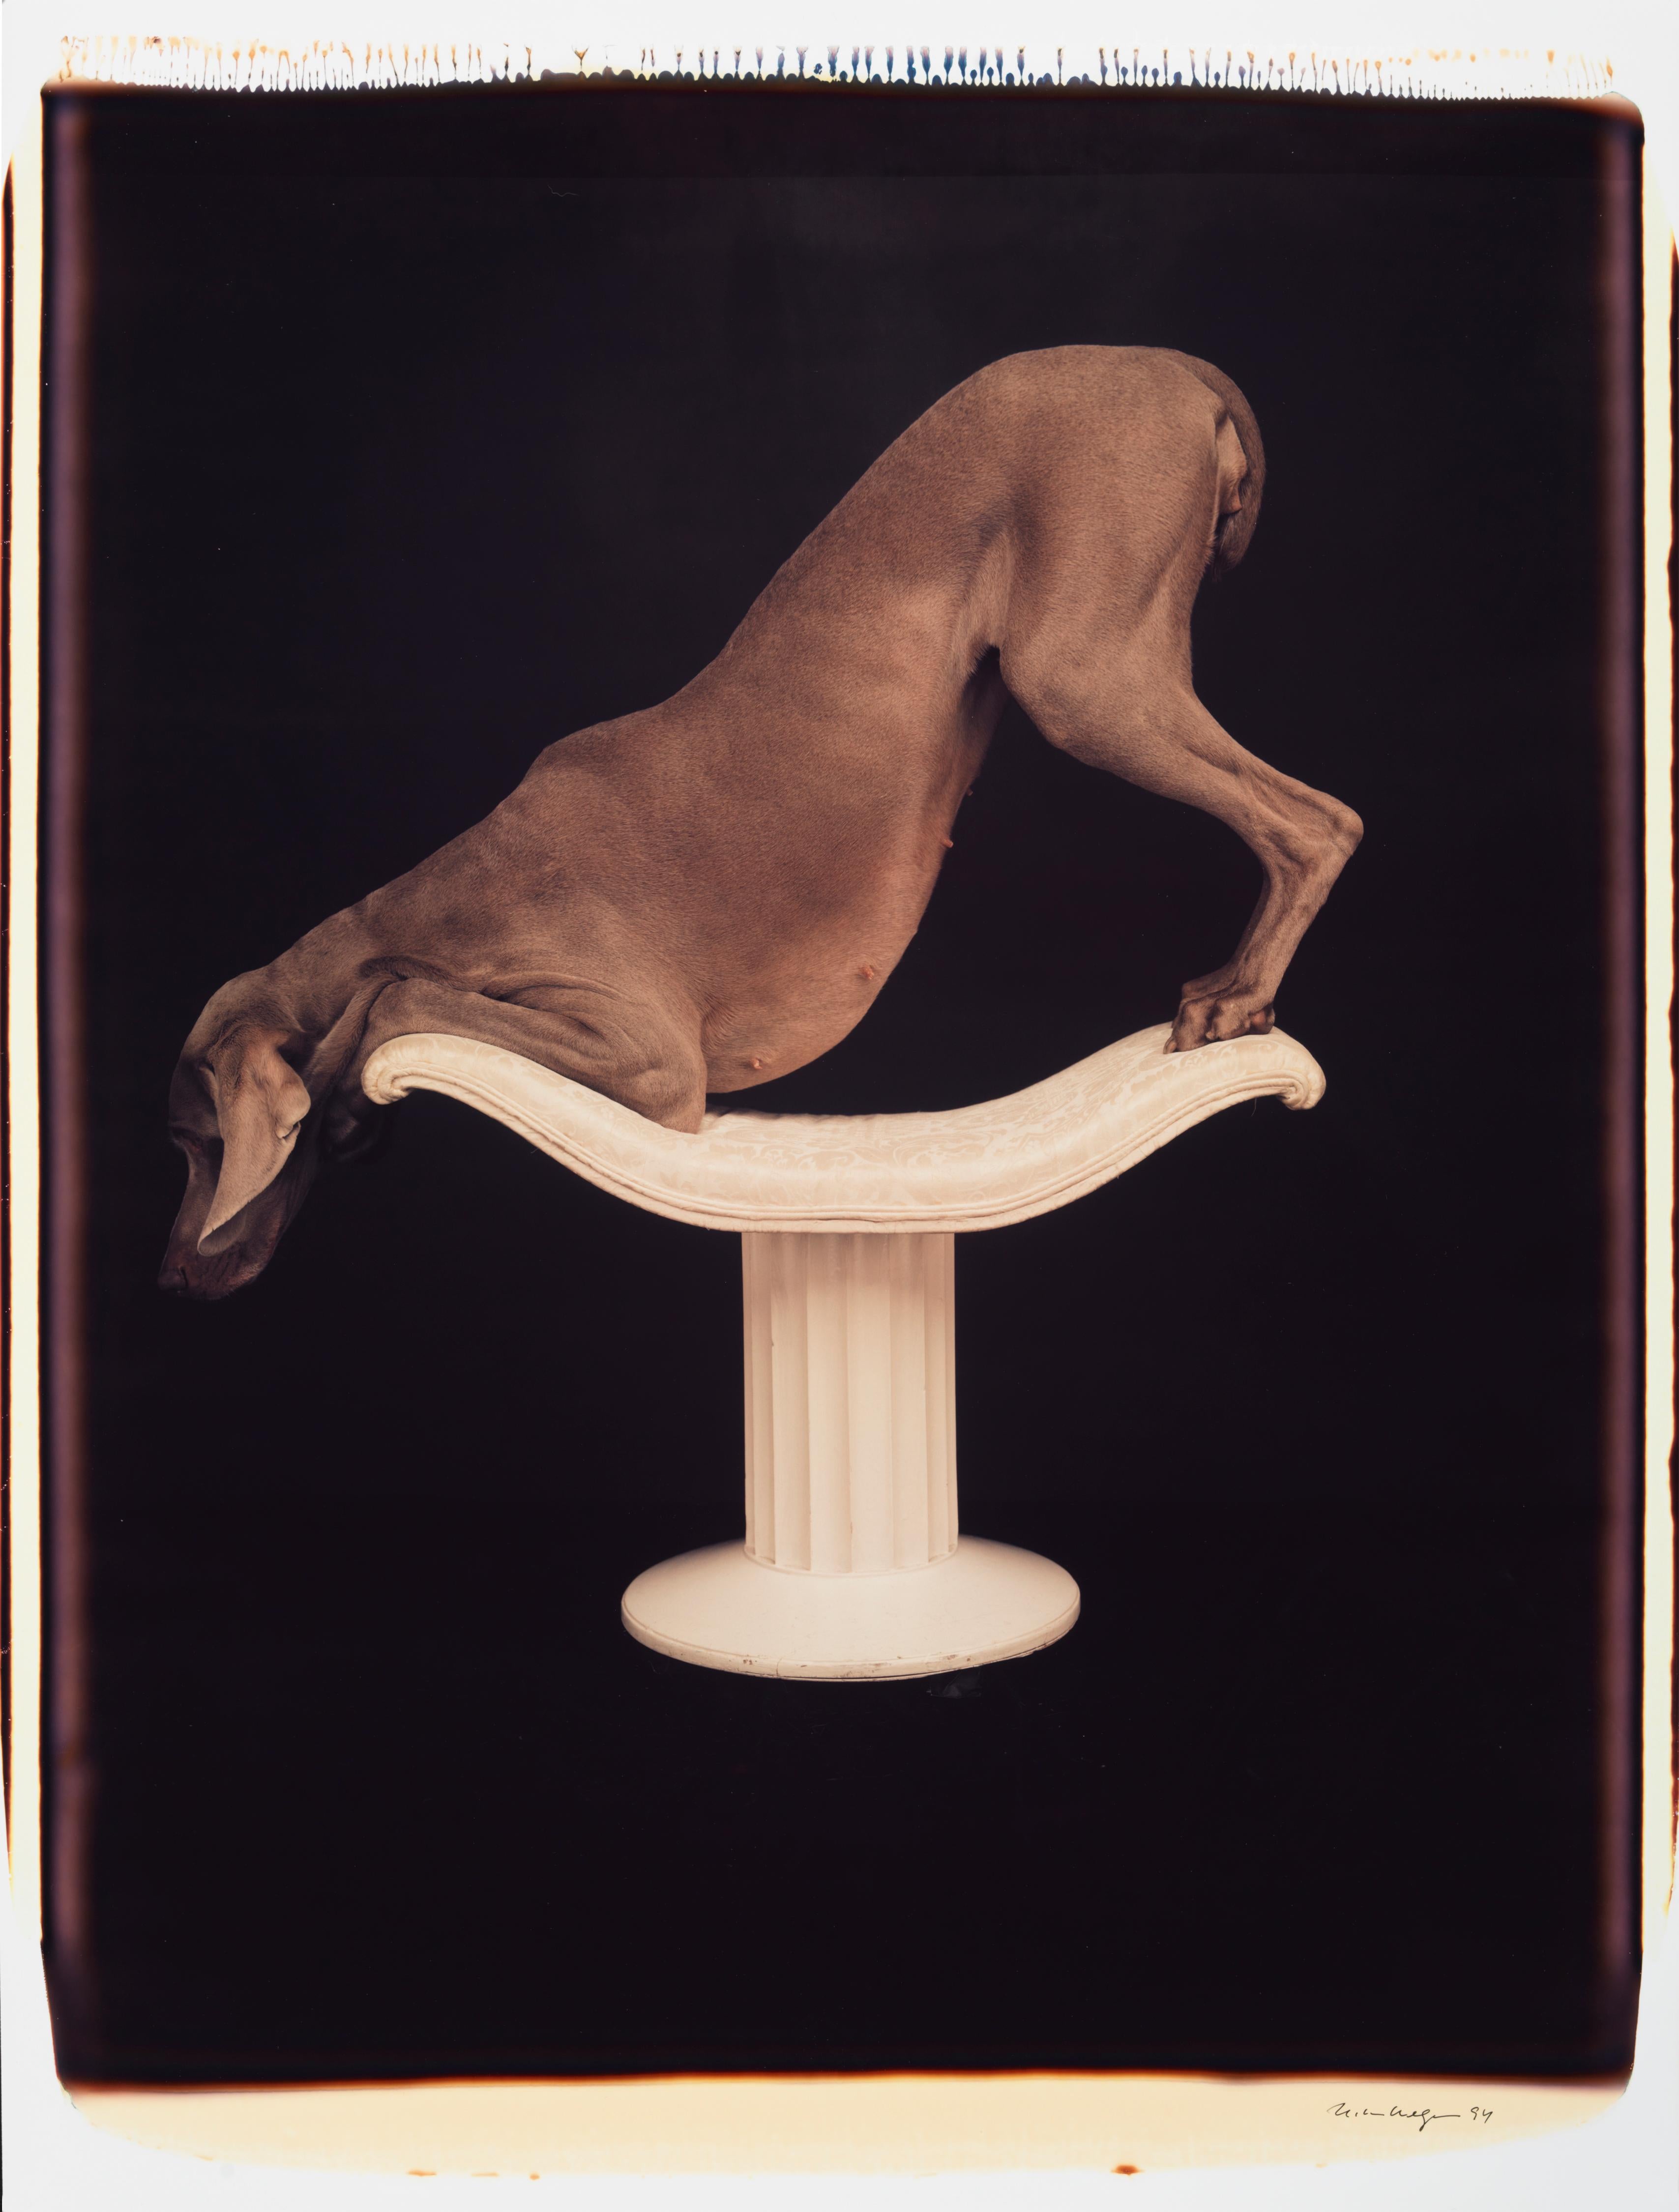 Posé sur un piédestal - William Wegman (Photographie couleur)
Signé et inscrit avec le titre
Tirage polaroïd couleur unique, imprimé en 1994
24 x 20 pouces

Les chiens, perruqués et parés de tenues et d'accessoires, présentent un large éventail de